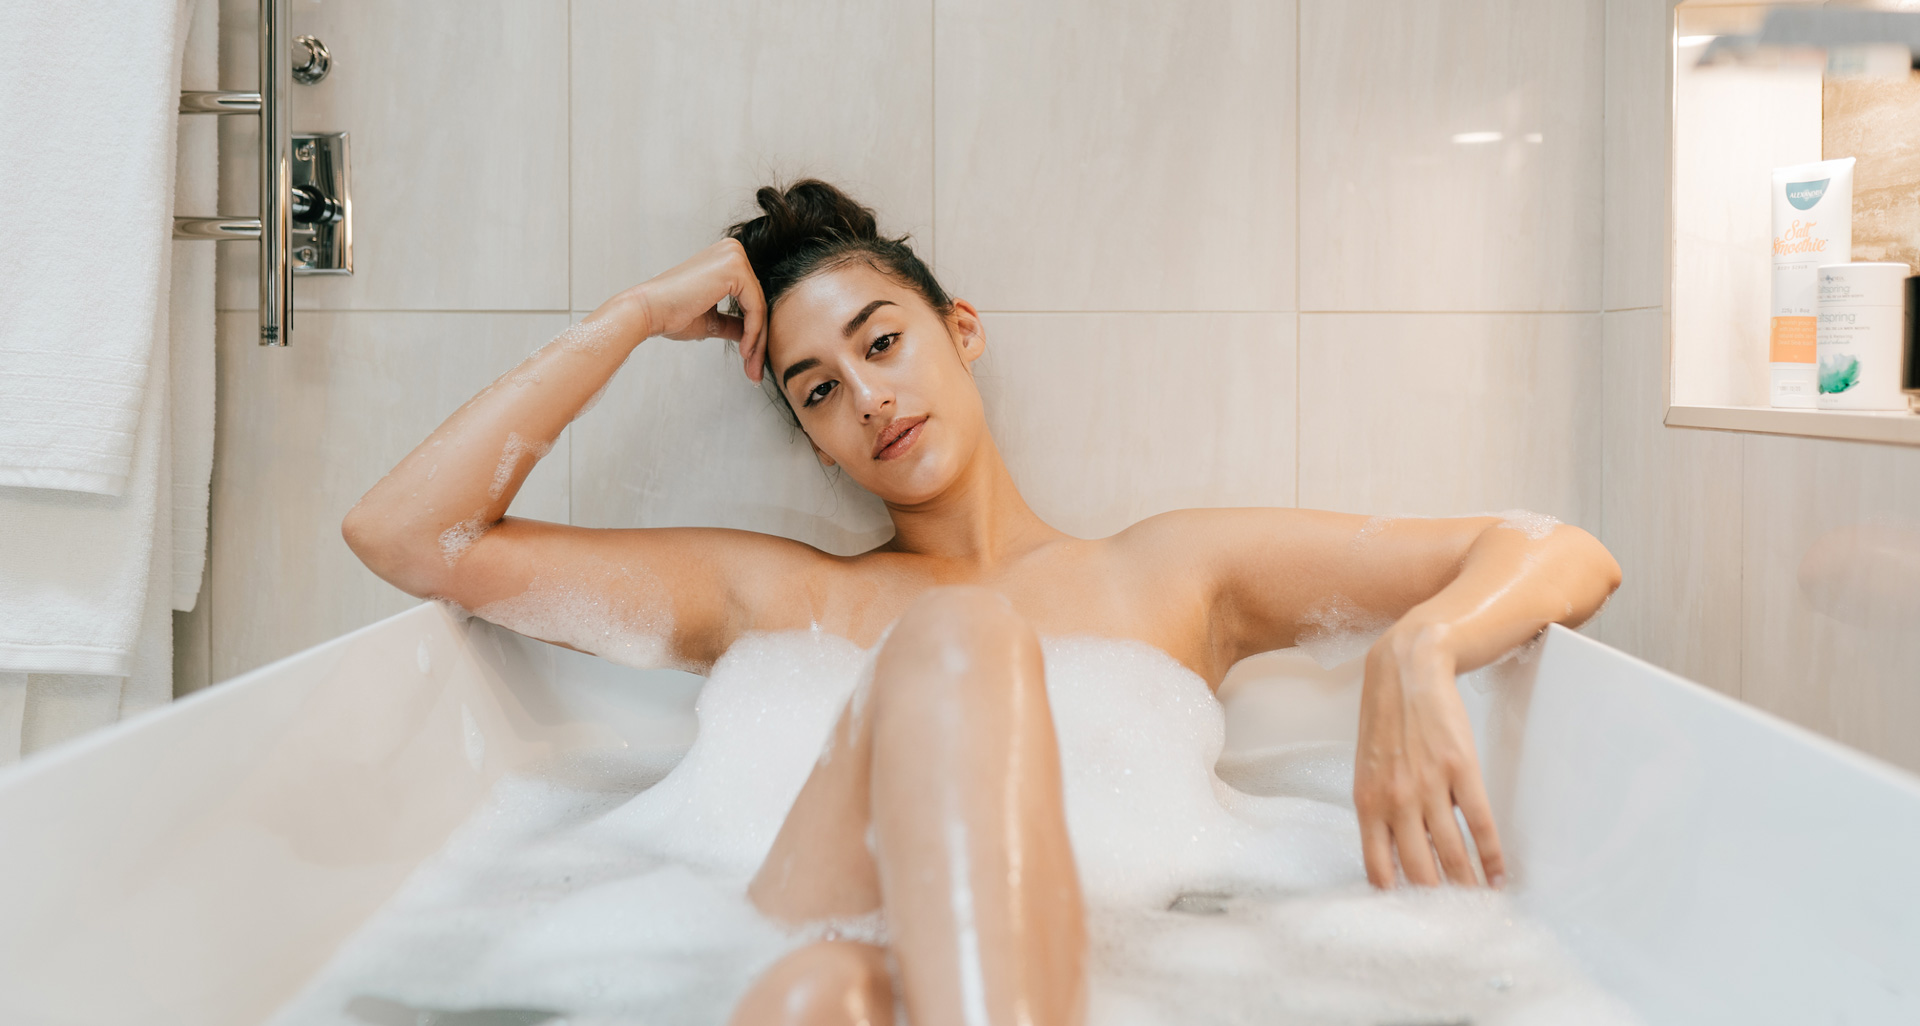 A woman sitting in a bathtub